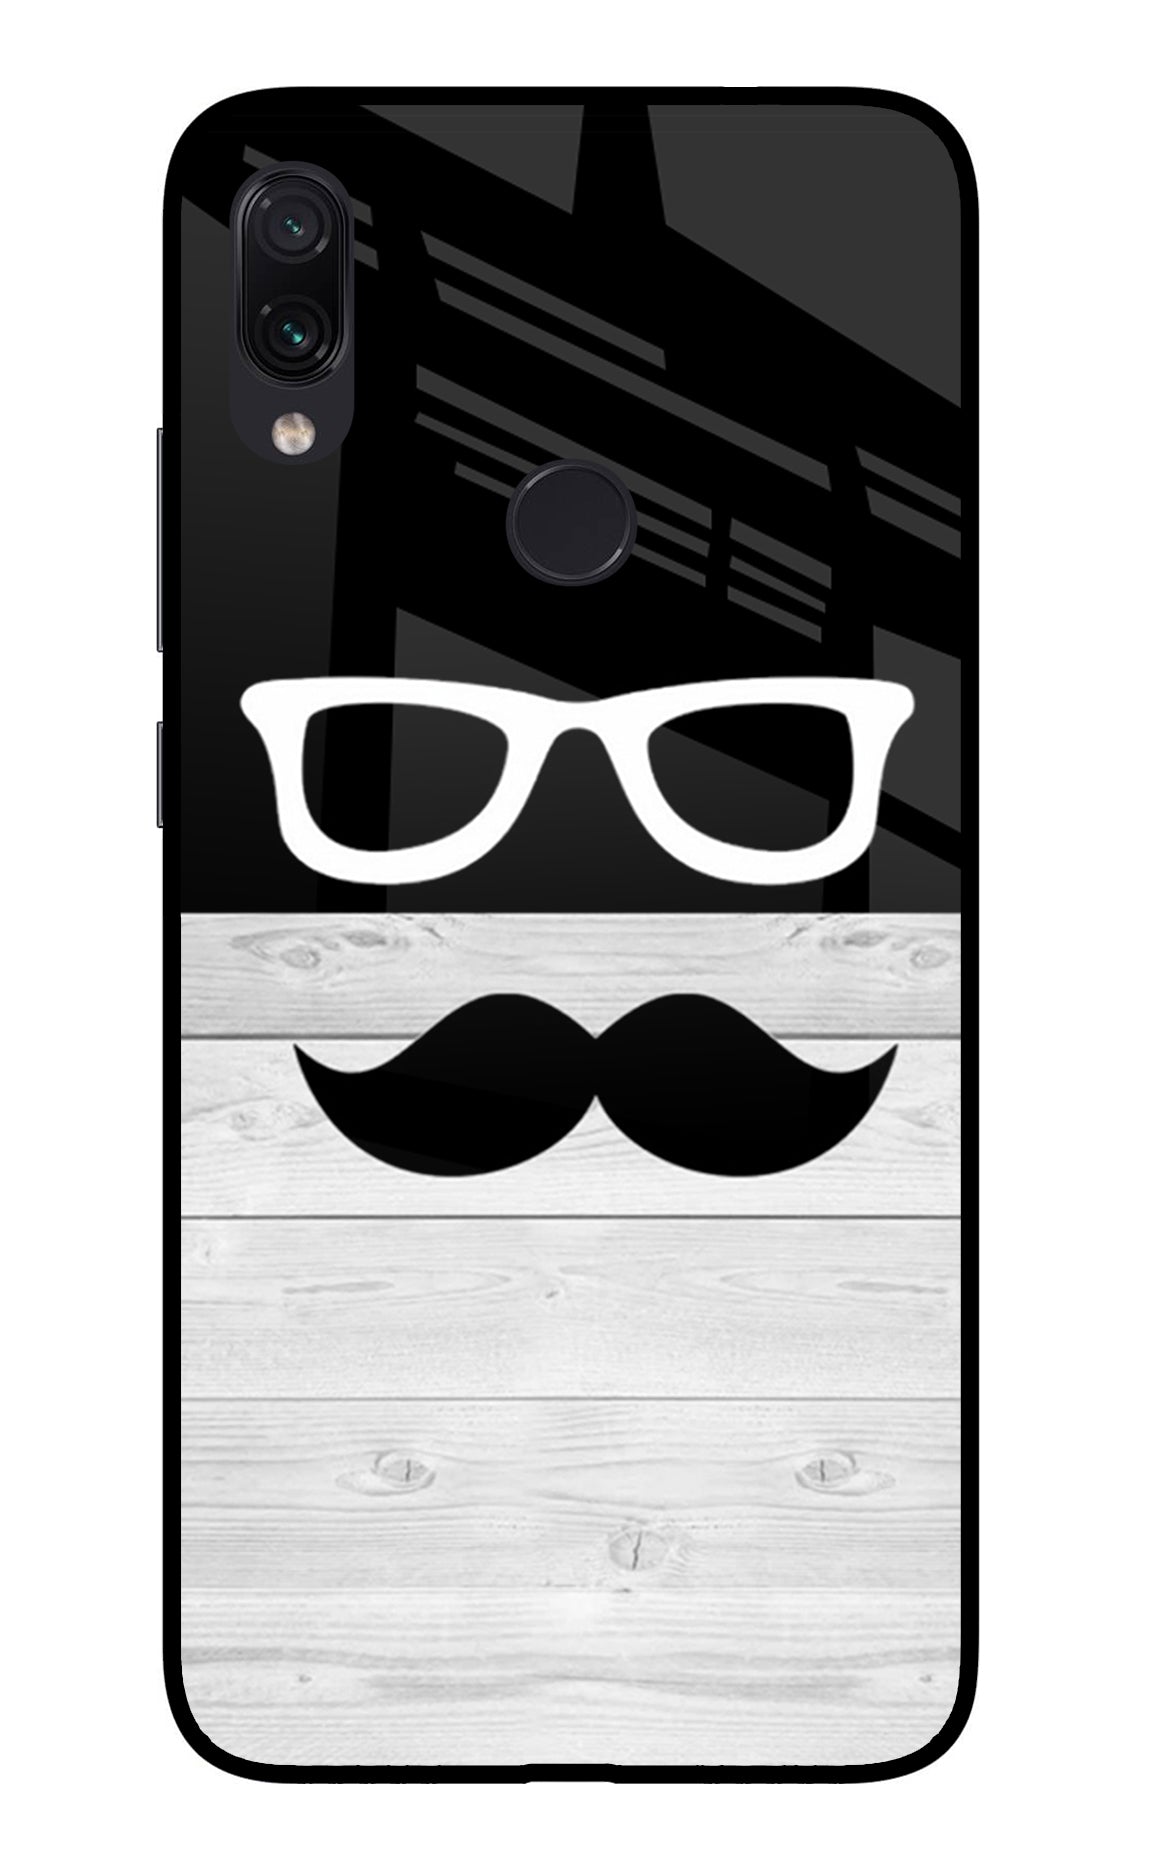 Mustache Redmi Note 7/7S/7 Pro Glass Case